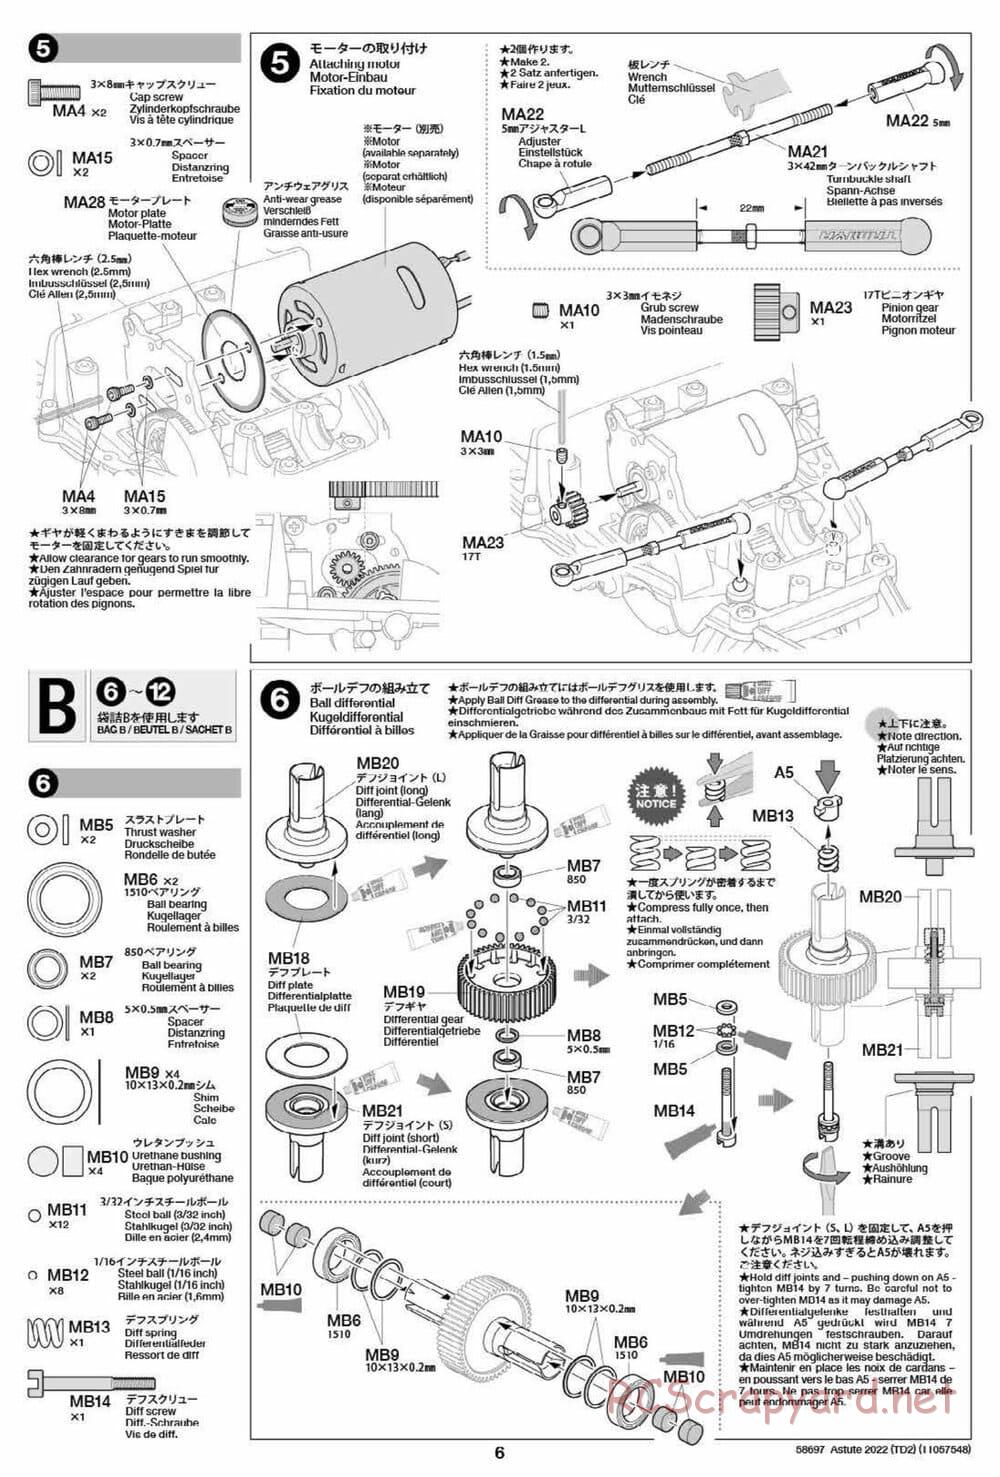 Tamiya - Astute 2022 - TD2 Chassis - Manual - Page 6